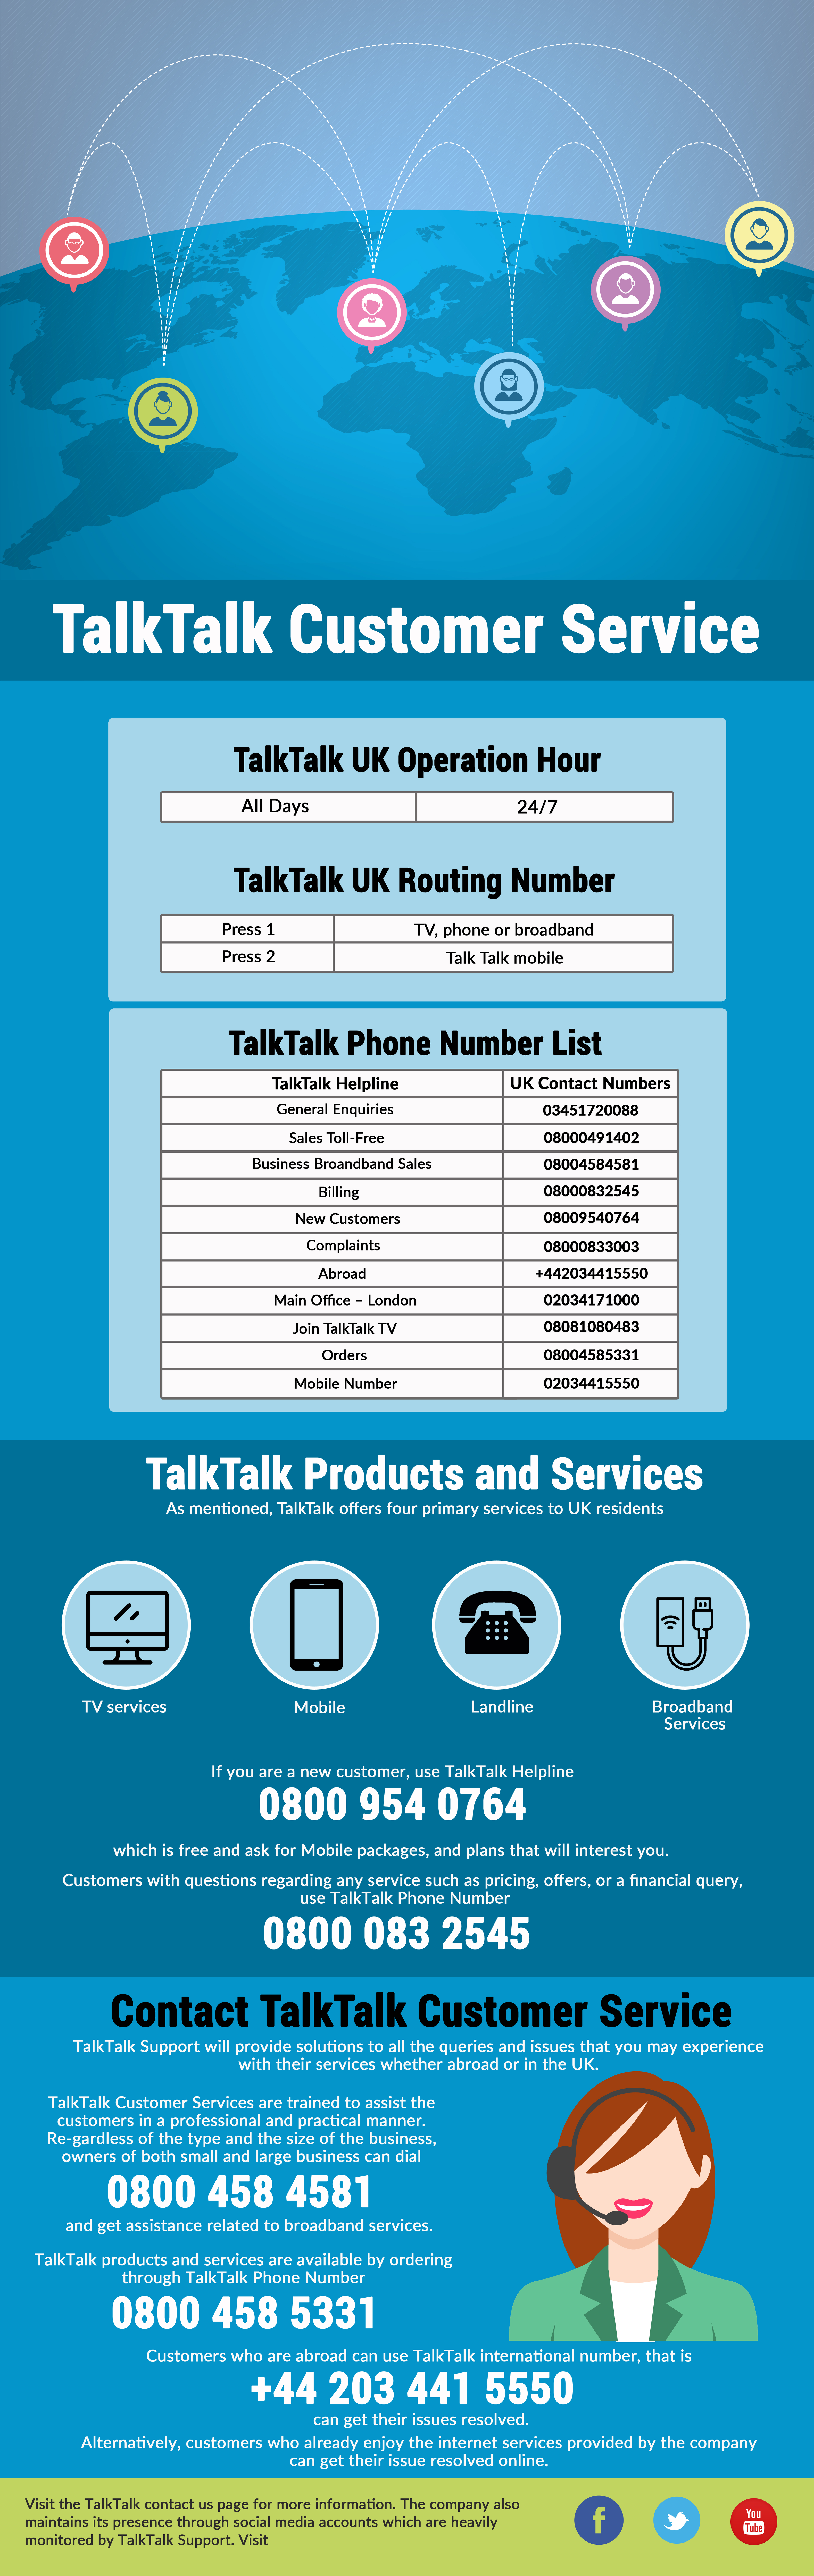 TalkTalk Customer Service Number